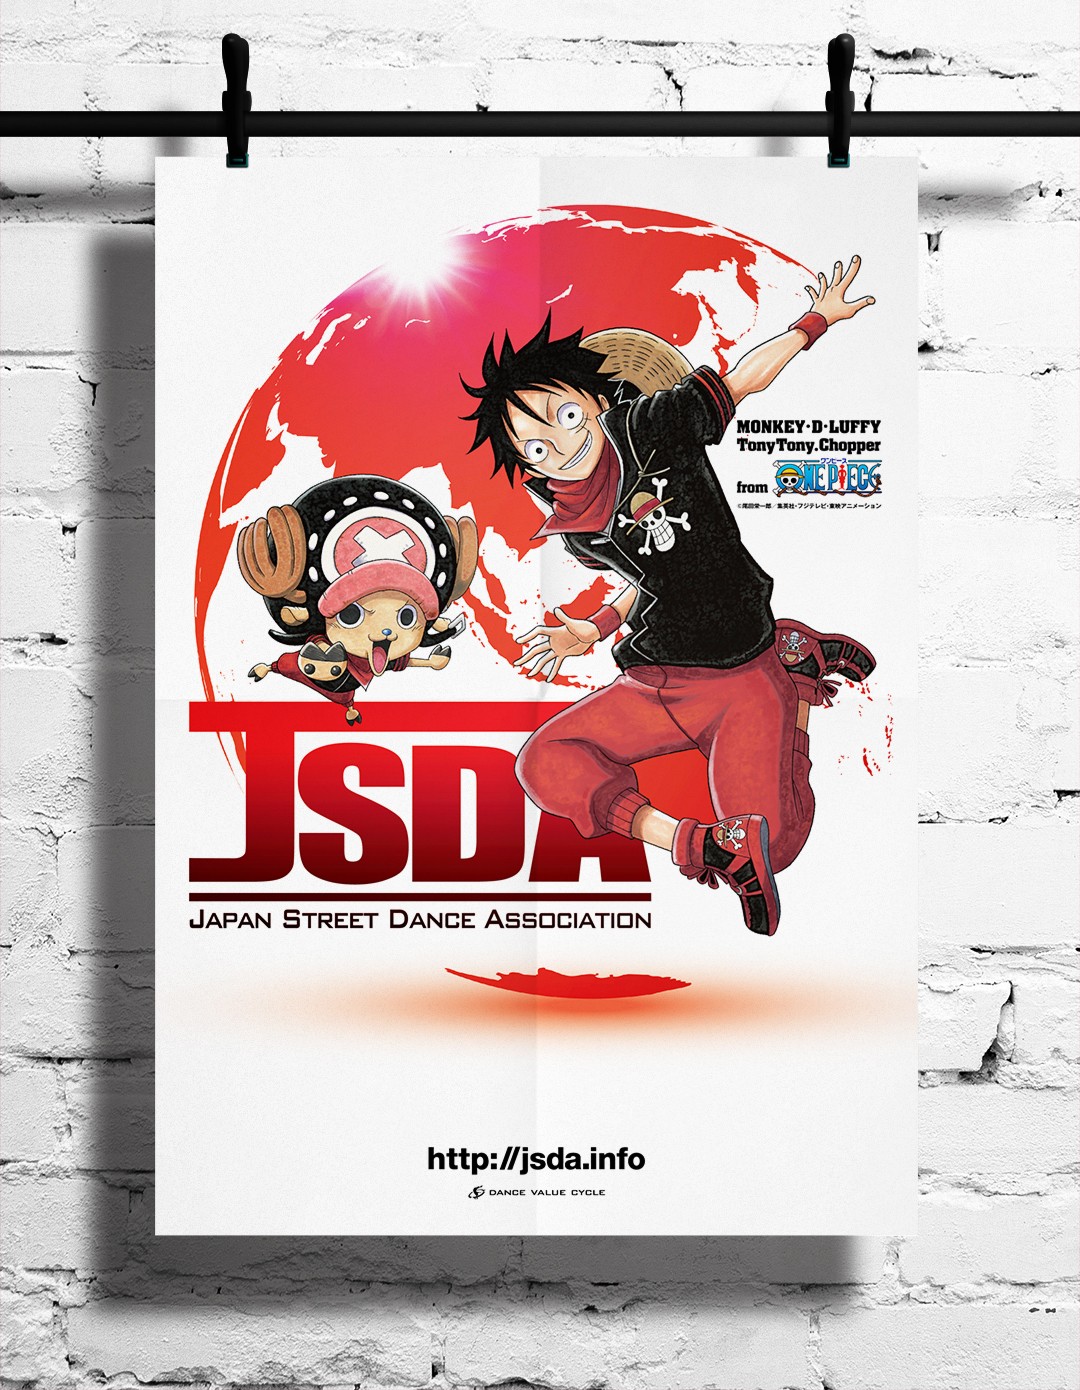 JSDA × ワンピース広告デザイン